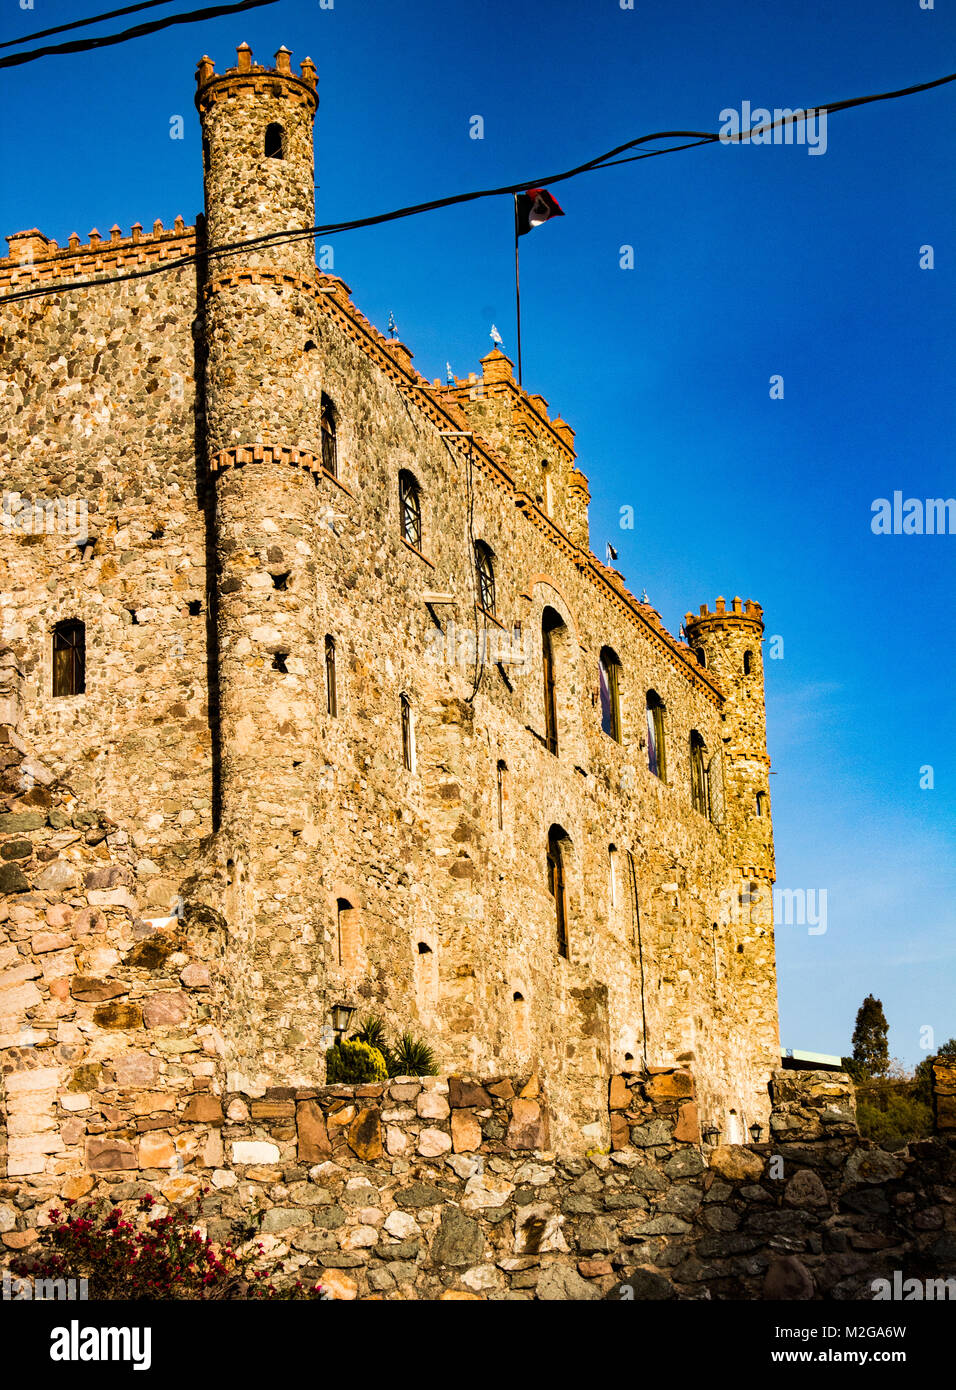 Antico castello e la parete nella città messicana Foto Stock